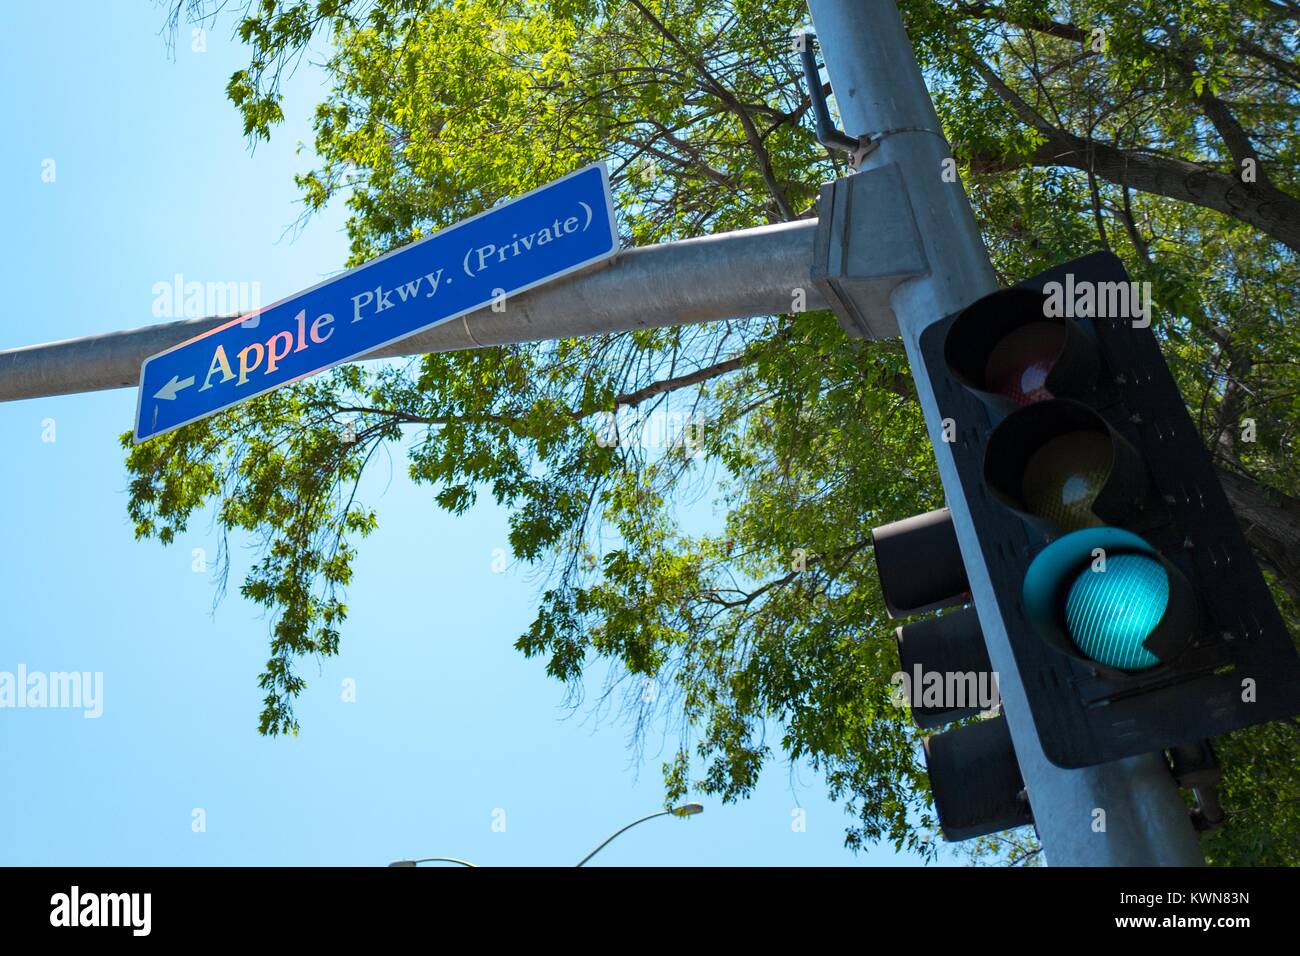 Digital Signage per Apple Parkway, con il semaforo verde, una delle strade principali di entrare nel parco di Apple, colloquialmente noto come 'l'astronave', la nuova sede di Apple Inc nella Silicon Valley Town di Cupertino, California, 25 luglio 2017. Foto Stock